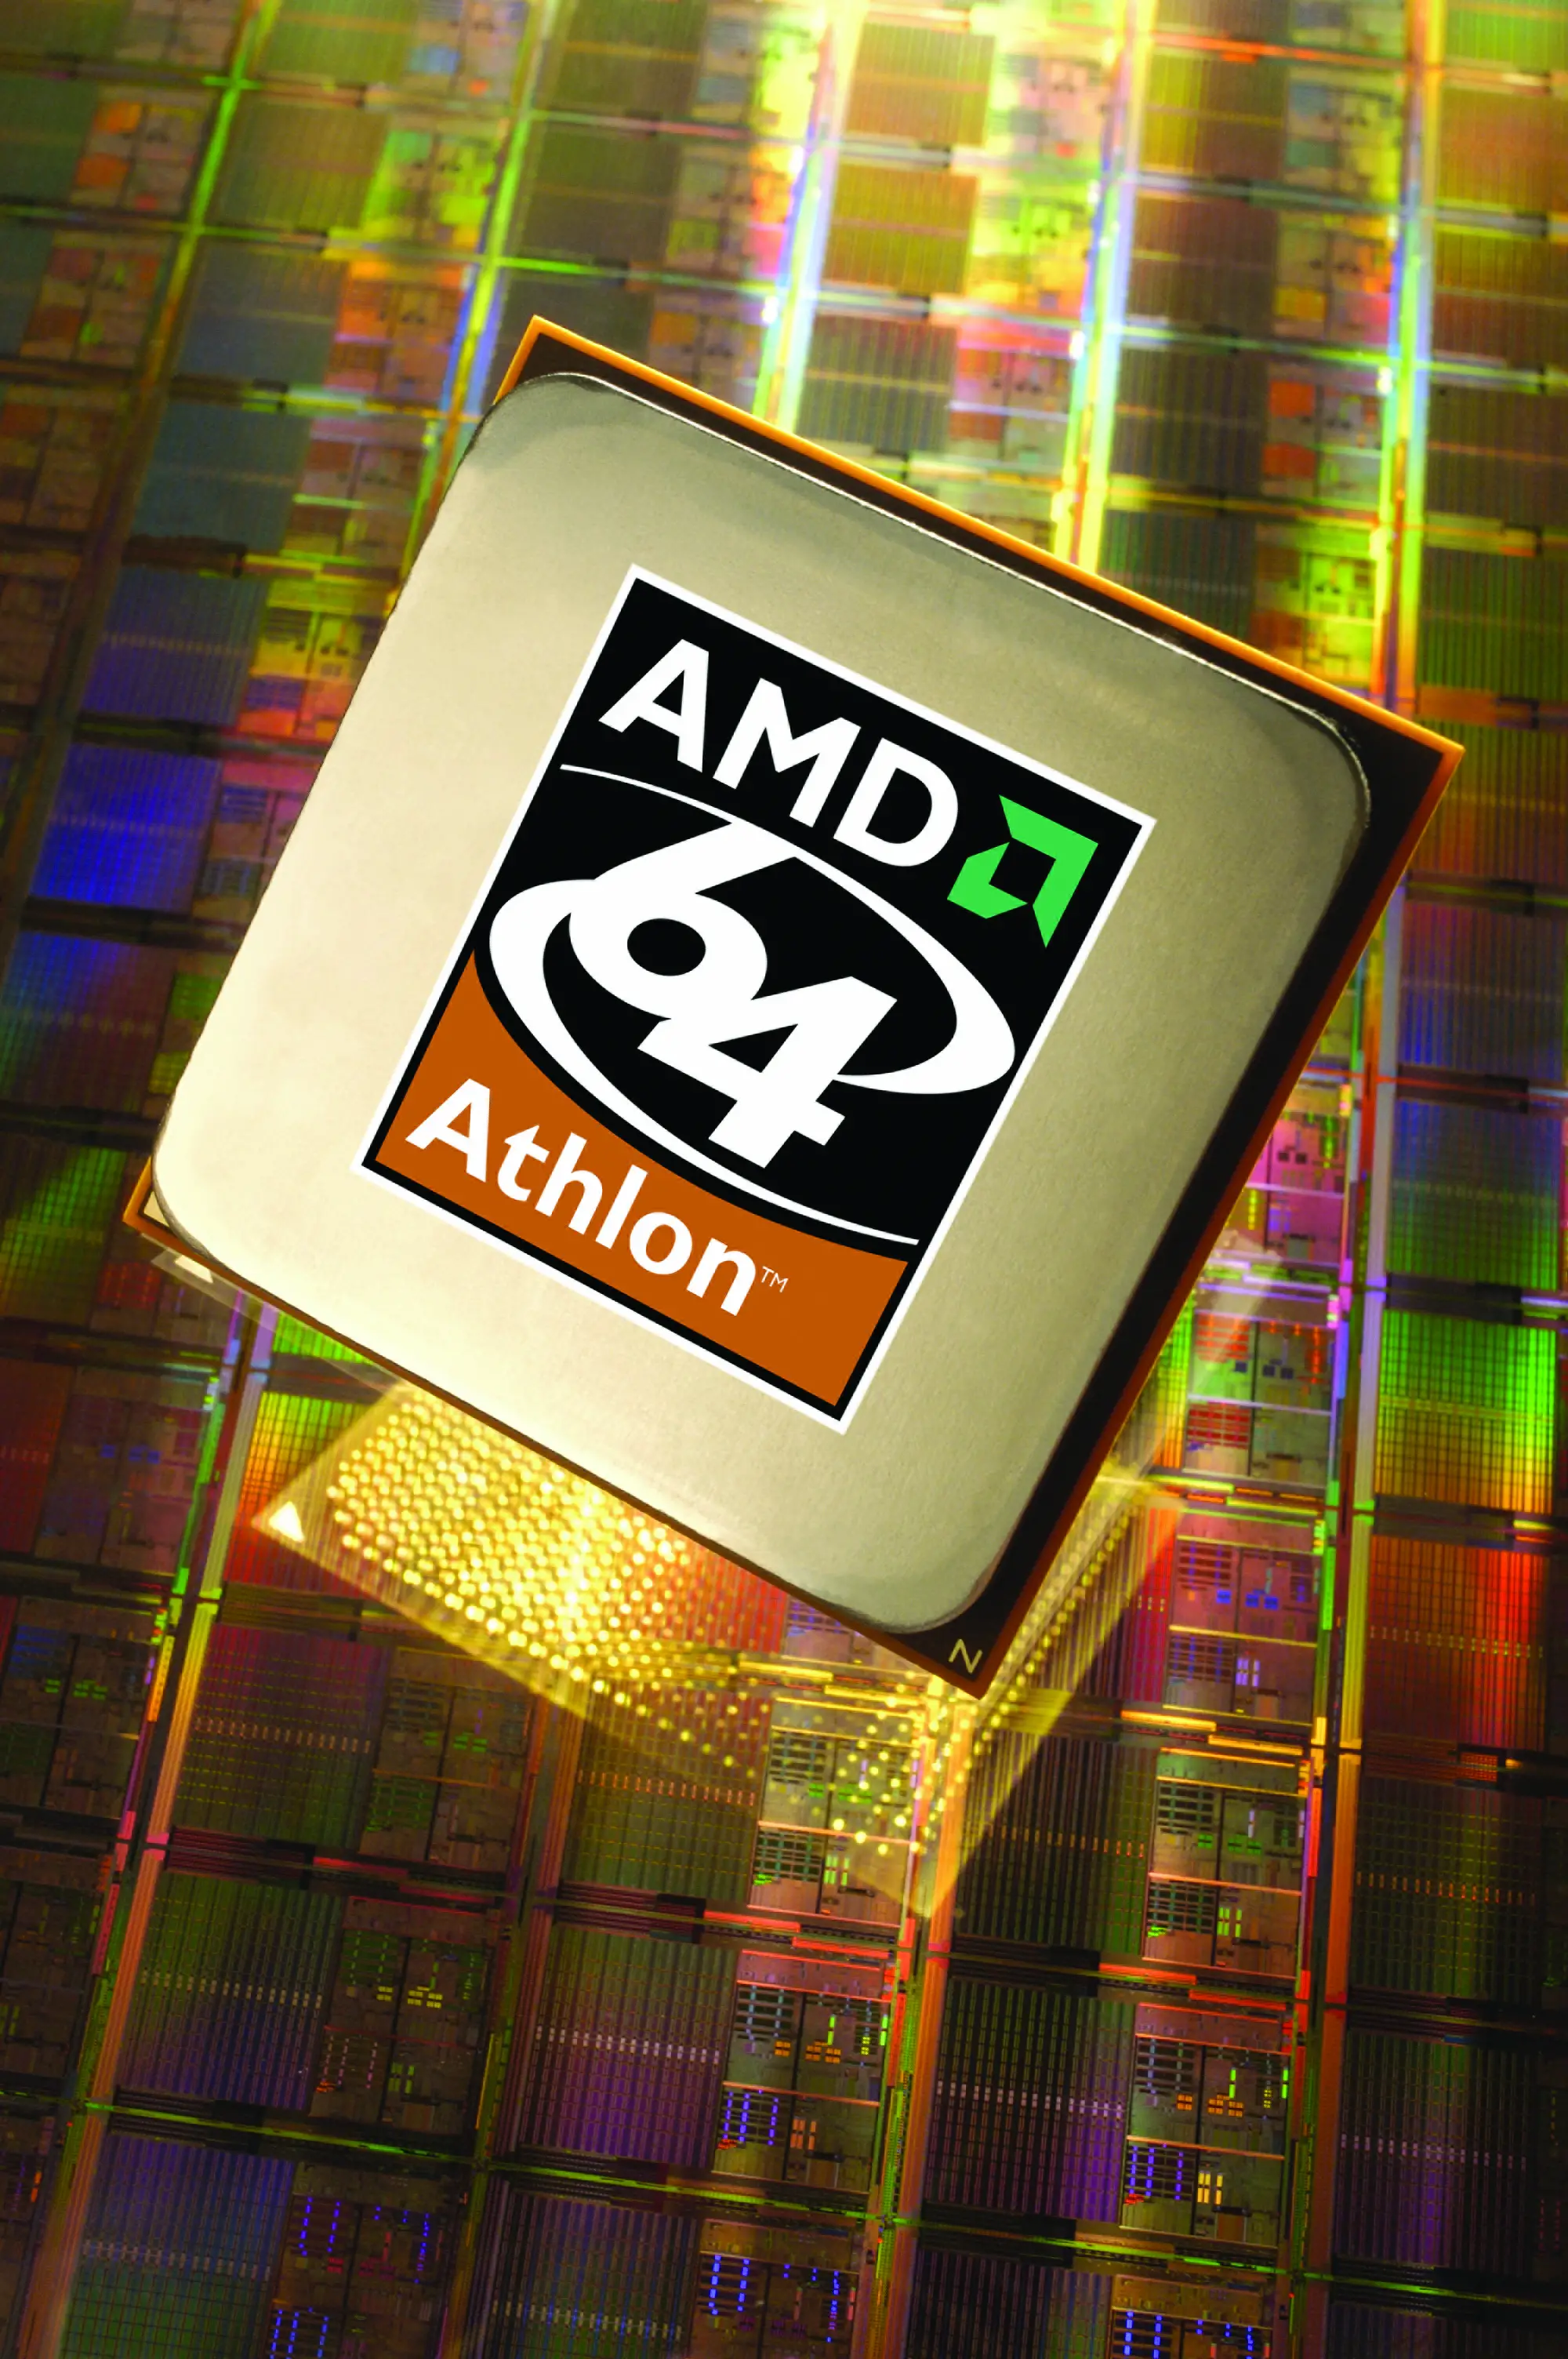 Amd 64 4400. Athlon 64 лого. AMD Athlon TM 64. AMD Athlon 64 2001. AMD Athlon 64 x2 3200+.